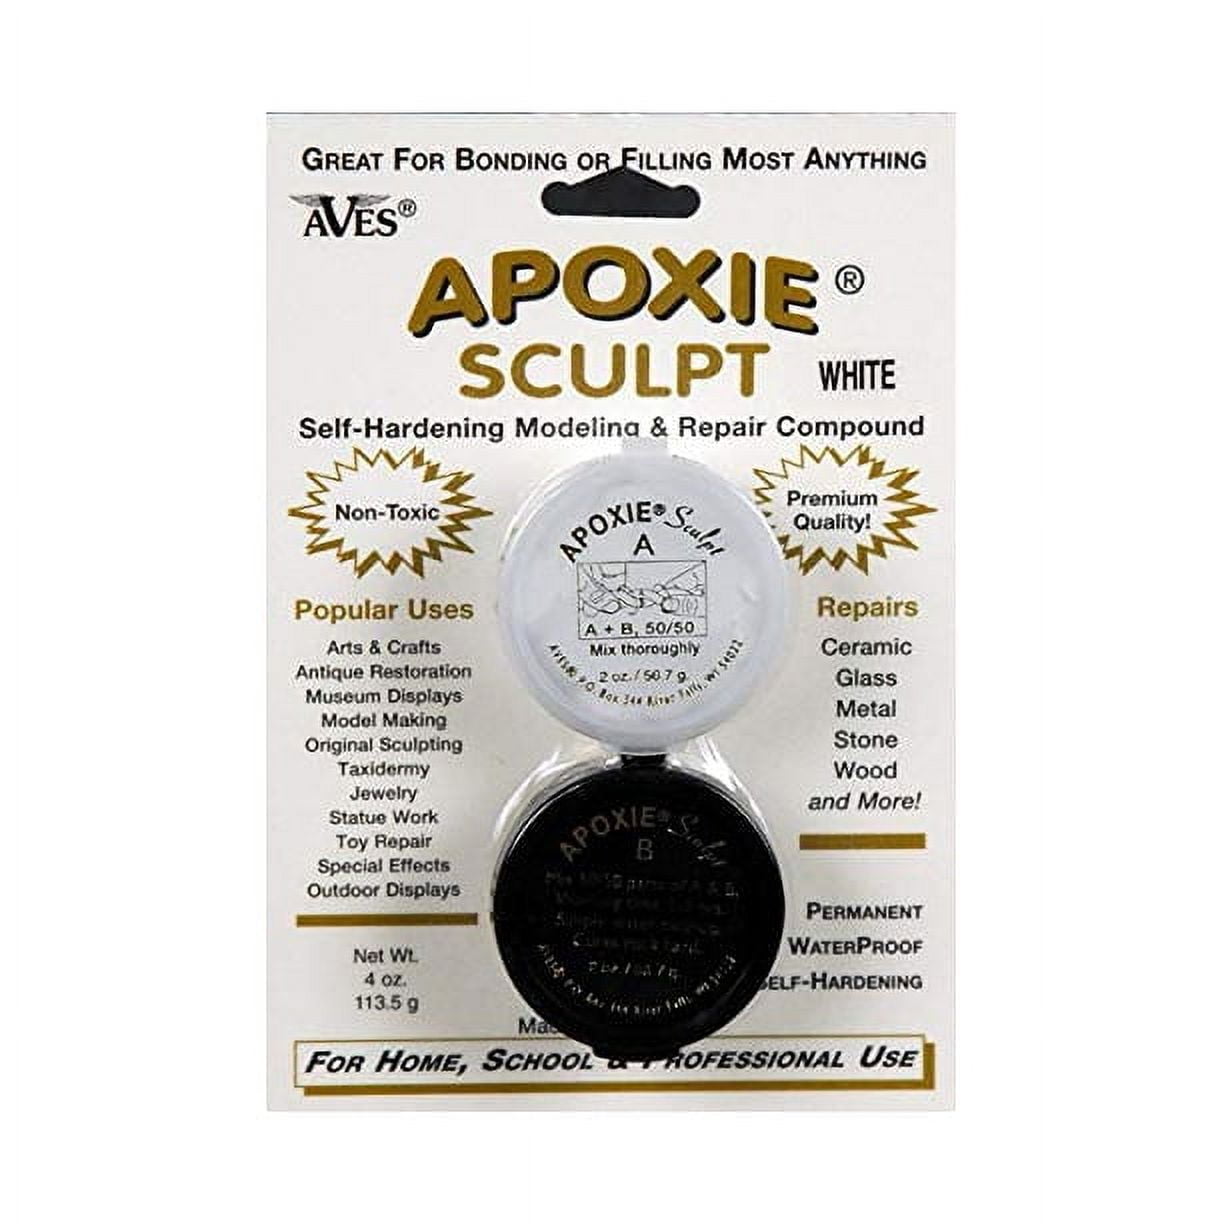 Apoxie Sculpt - 2 Part Modeling Compound A & B - 1/4 Pound, White